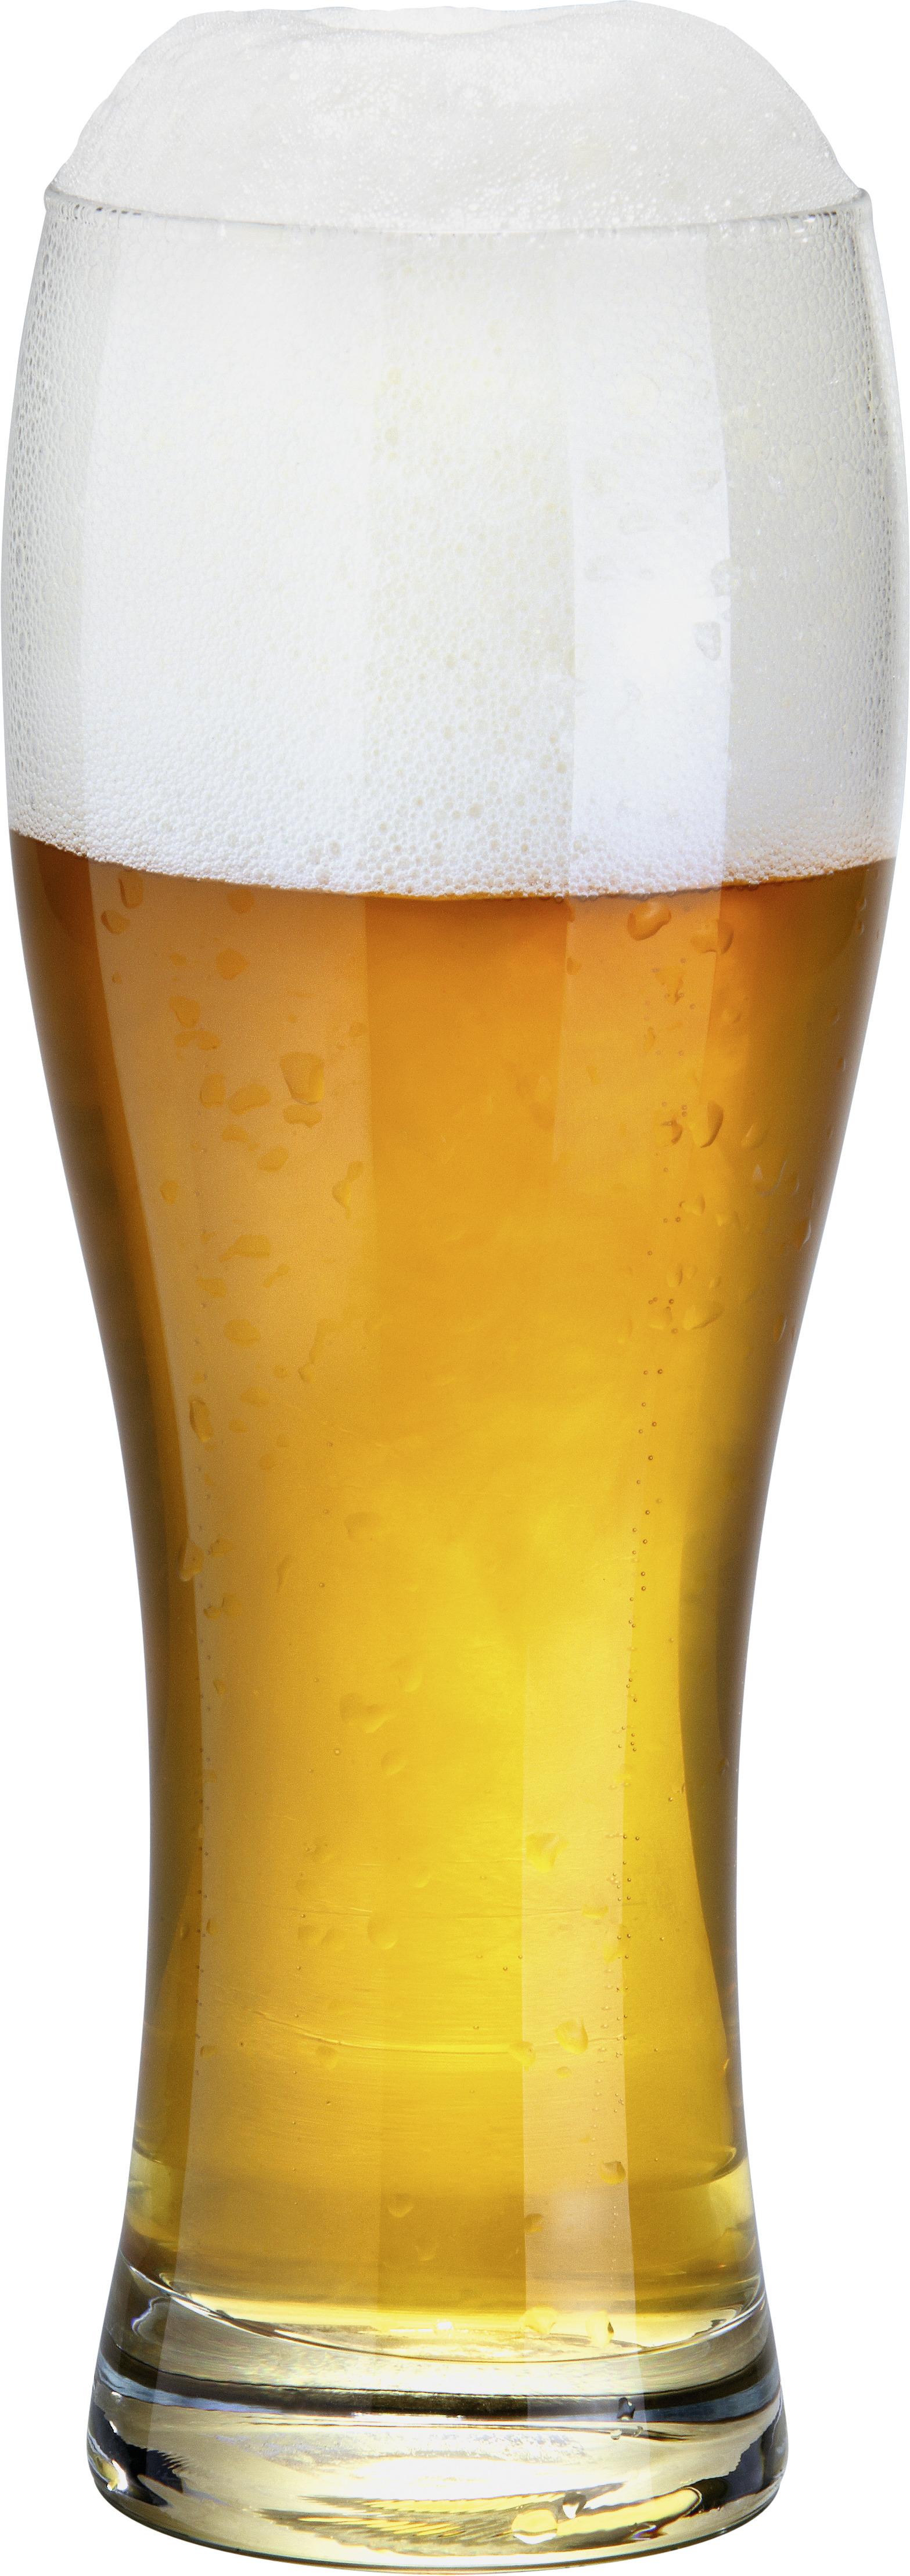 Pahar pentru bere din grâu 4343 - clar, sticlă (7,5/22/7,5cm)